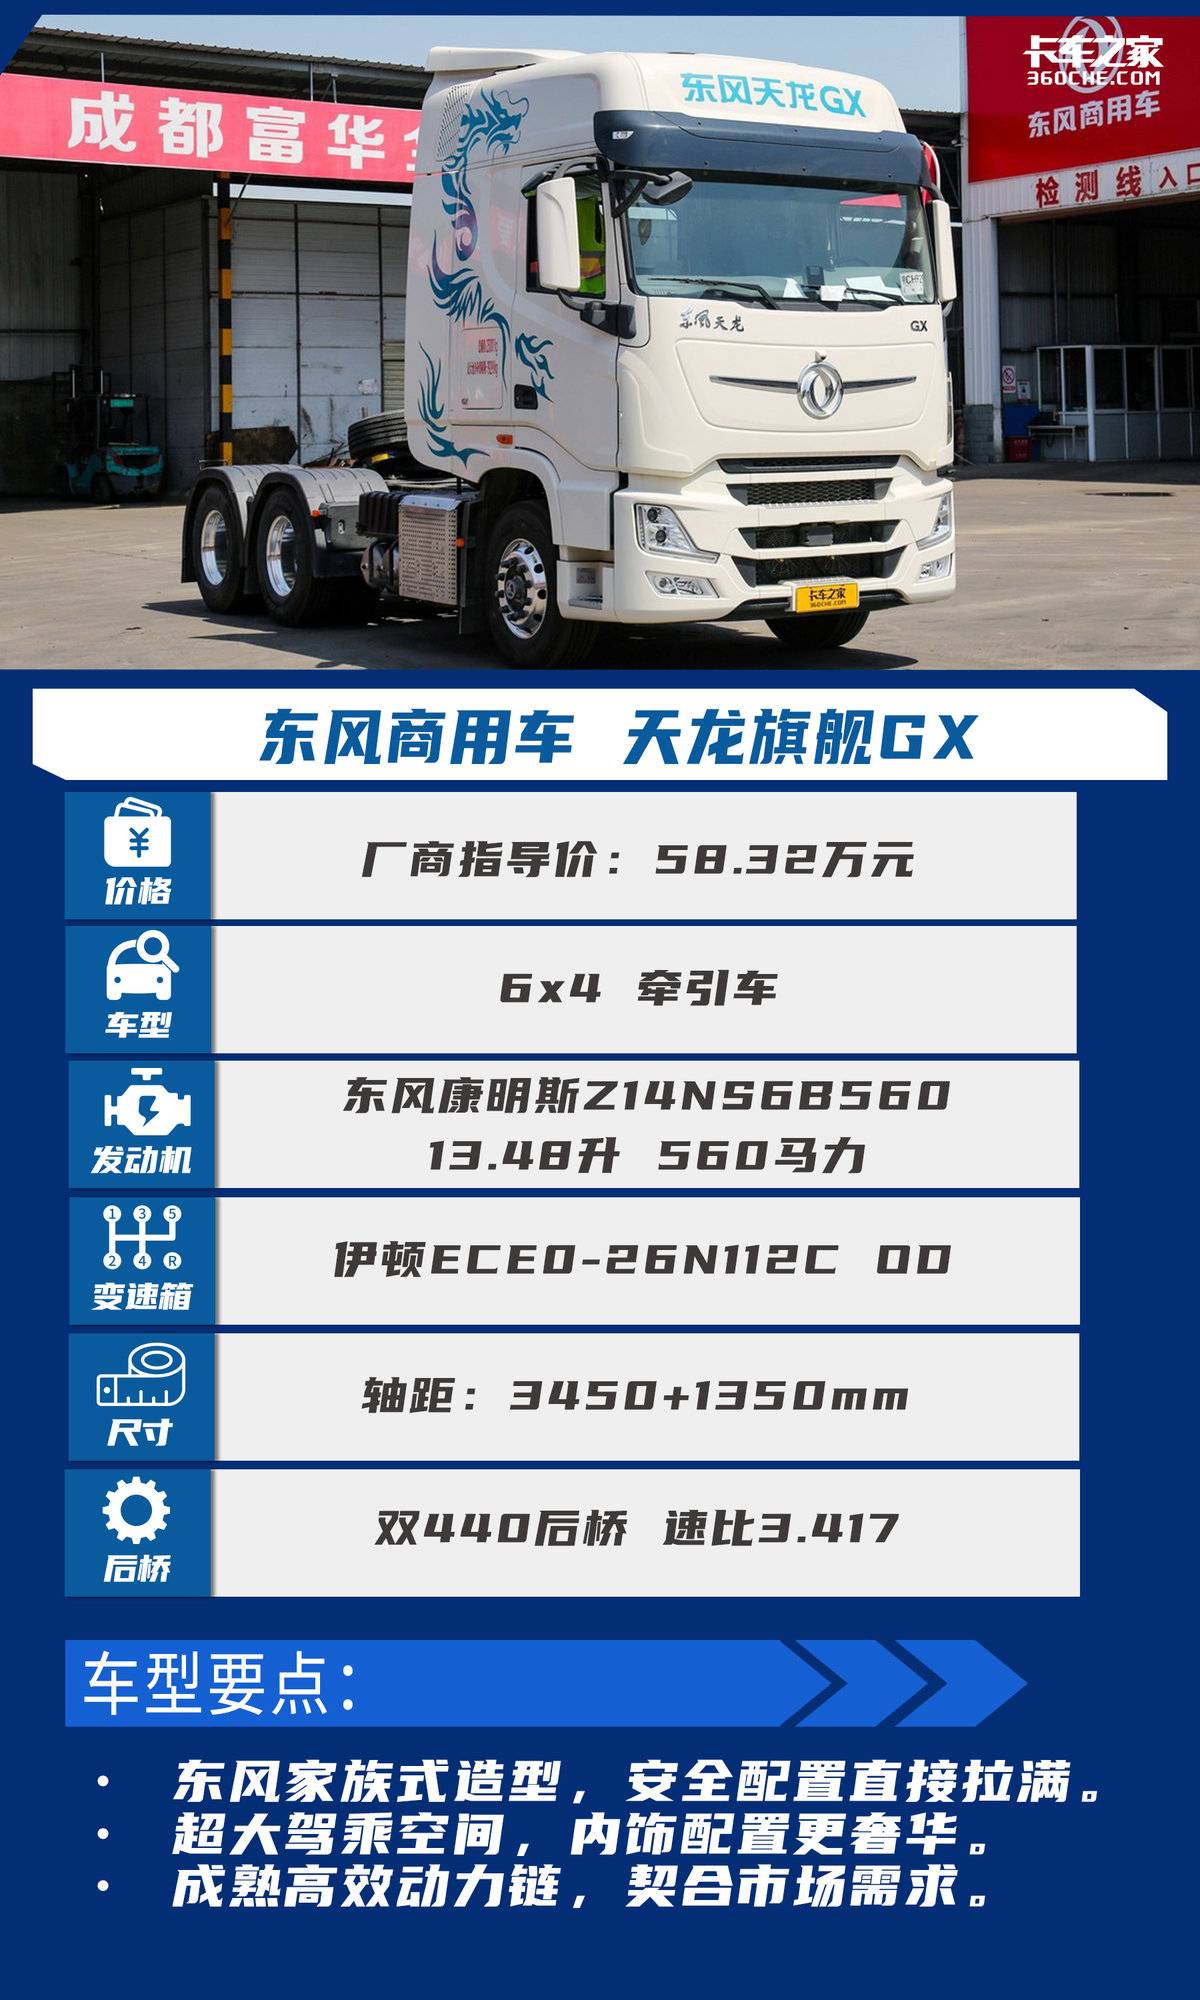 国产卡车最高战力 东风天龙GX强在哪里?